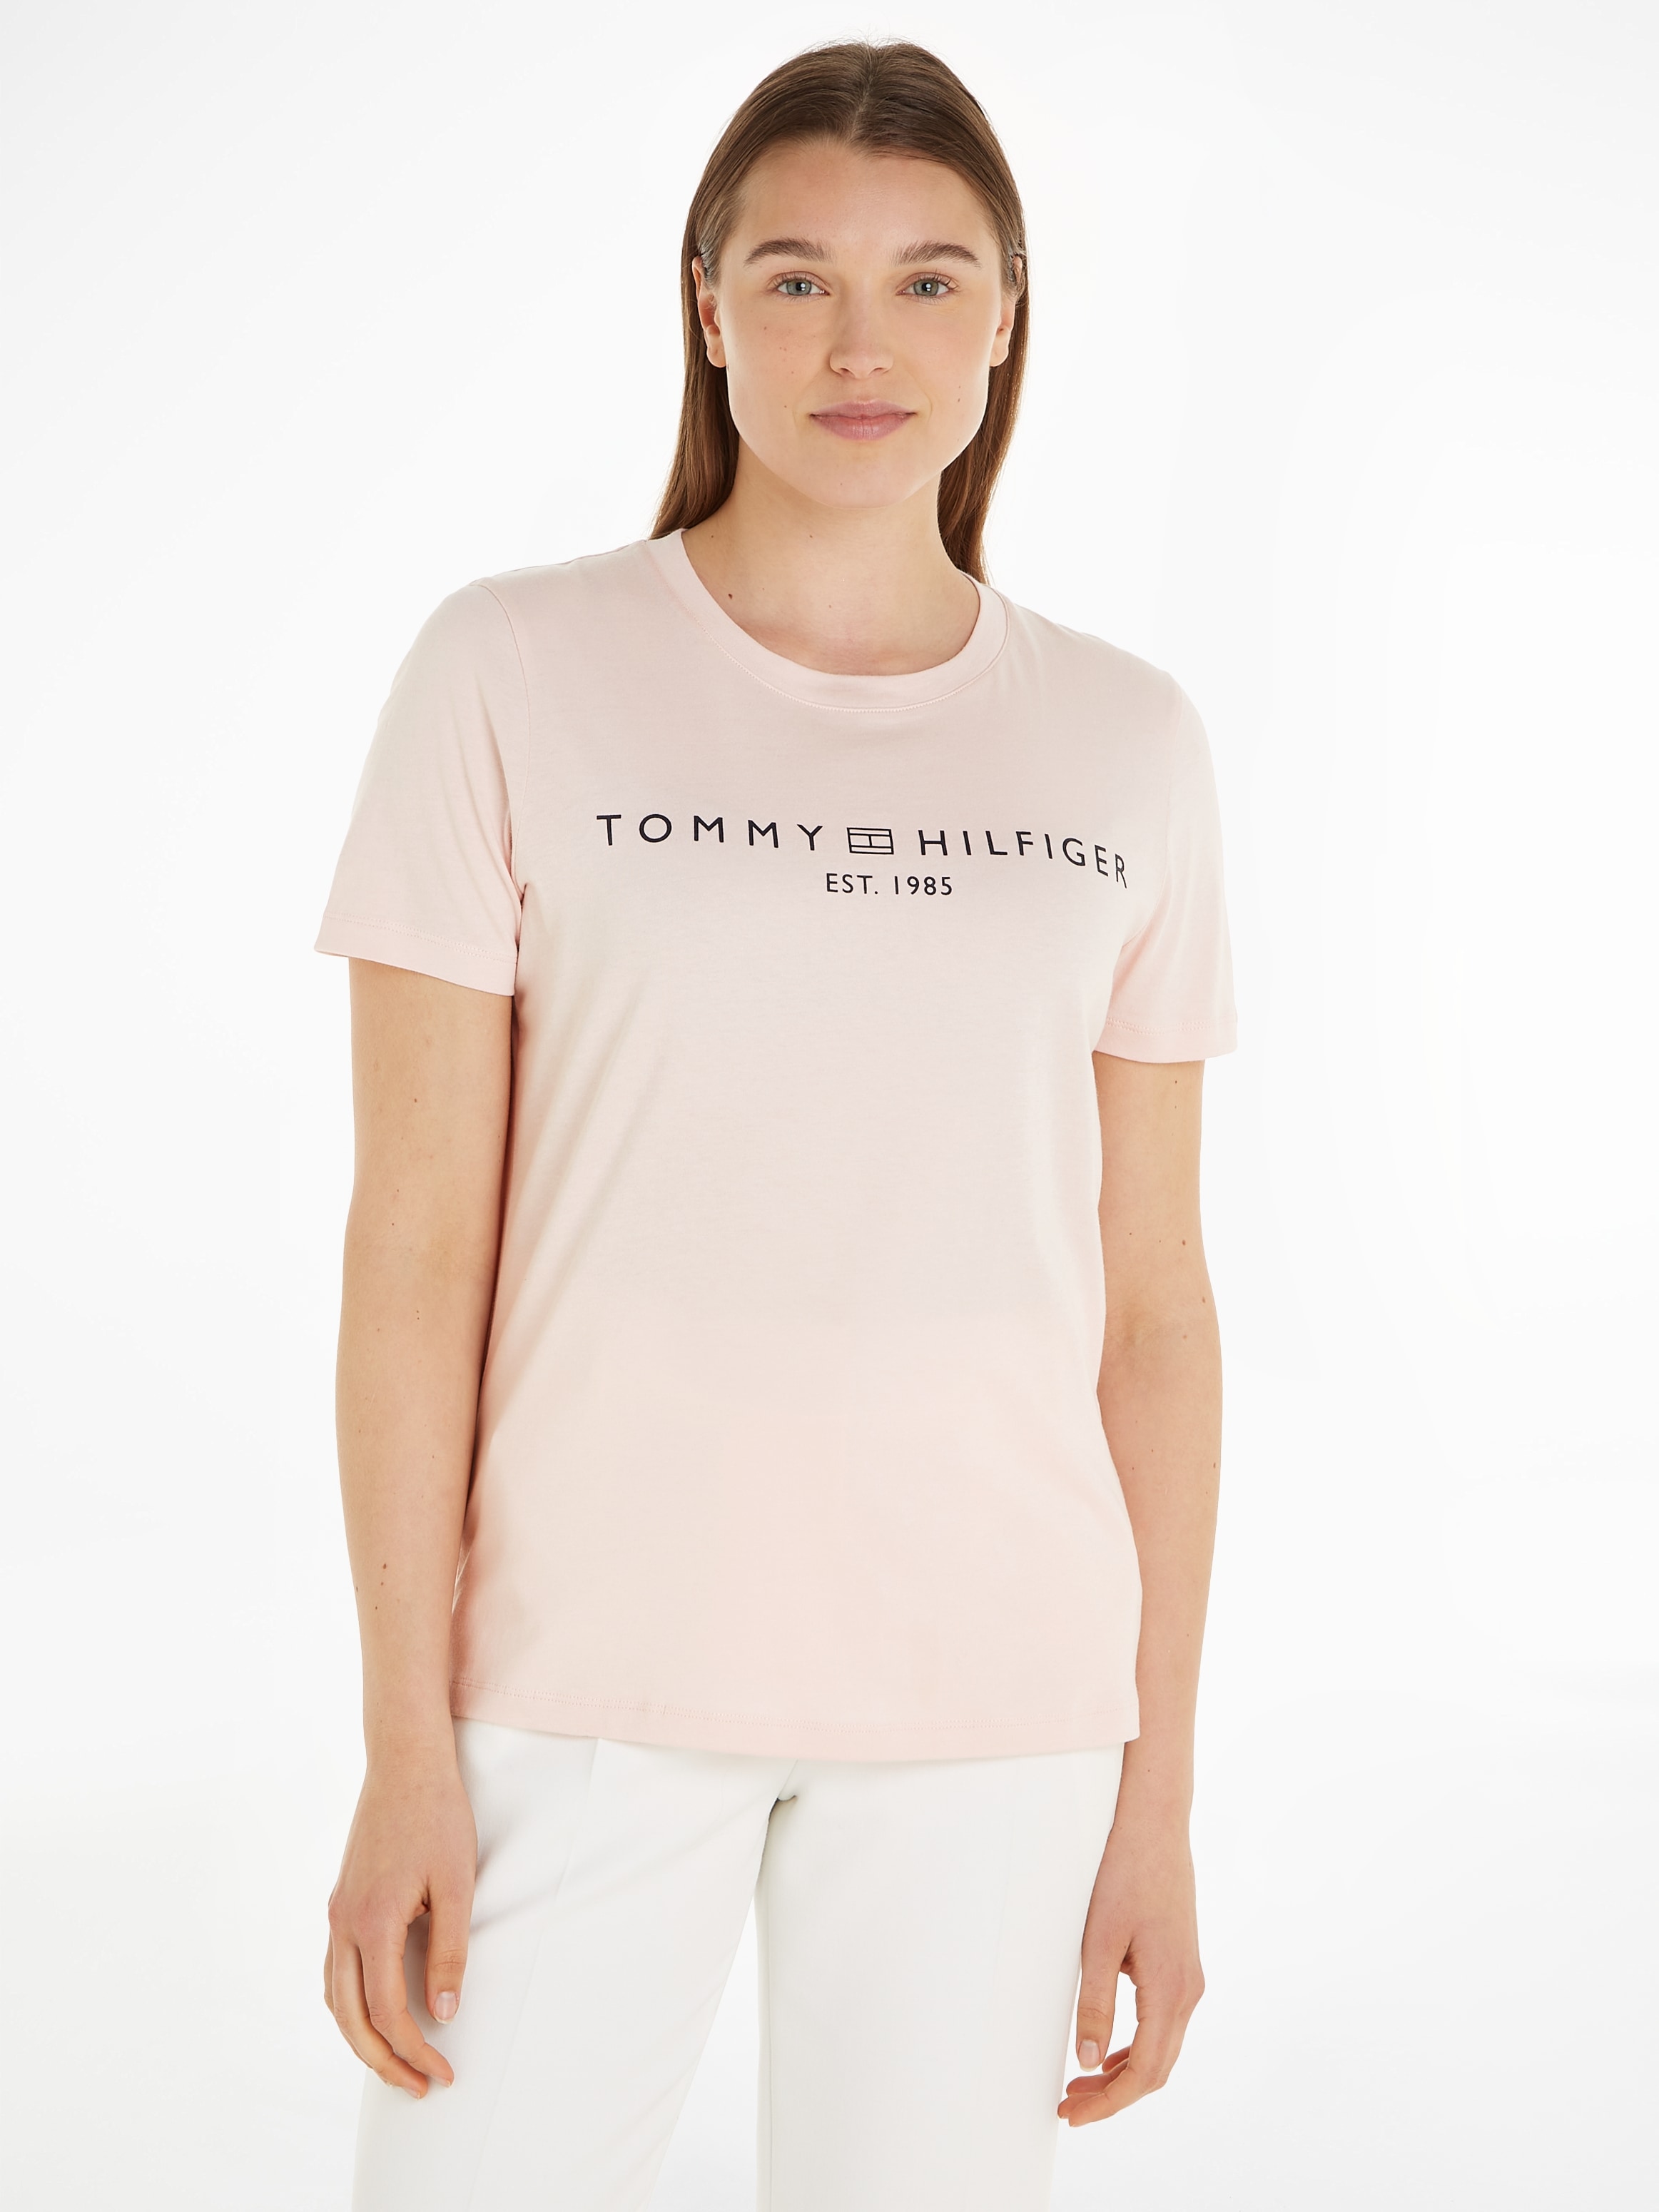 auf CORP online der »REG LOGO C-NK Tommy Markenlabel Brust Hilfiger mit T-Shirt SS«,